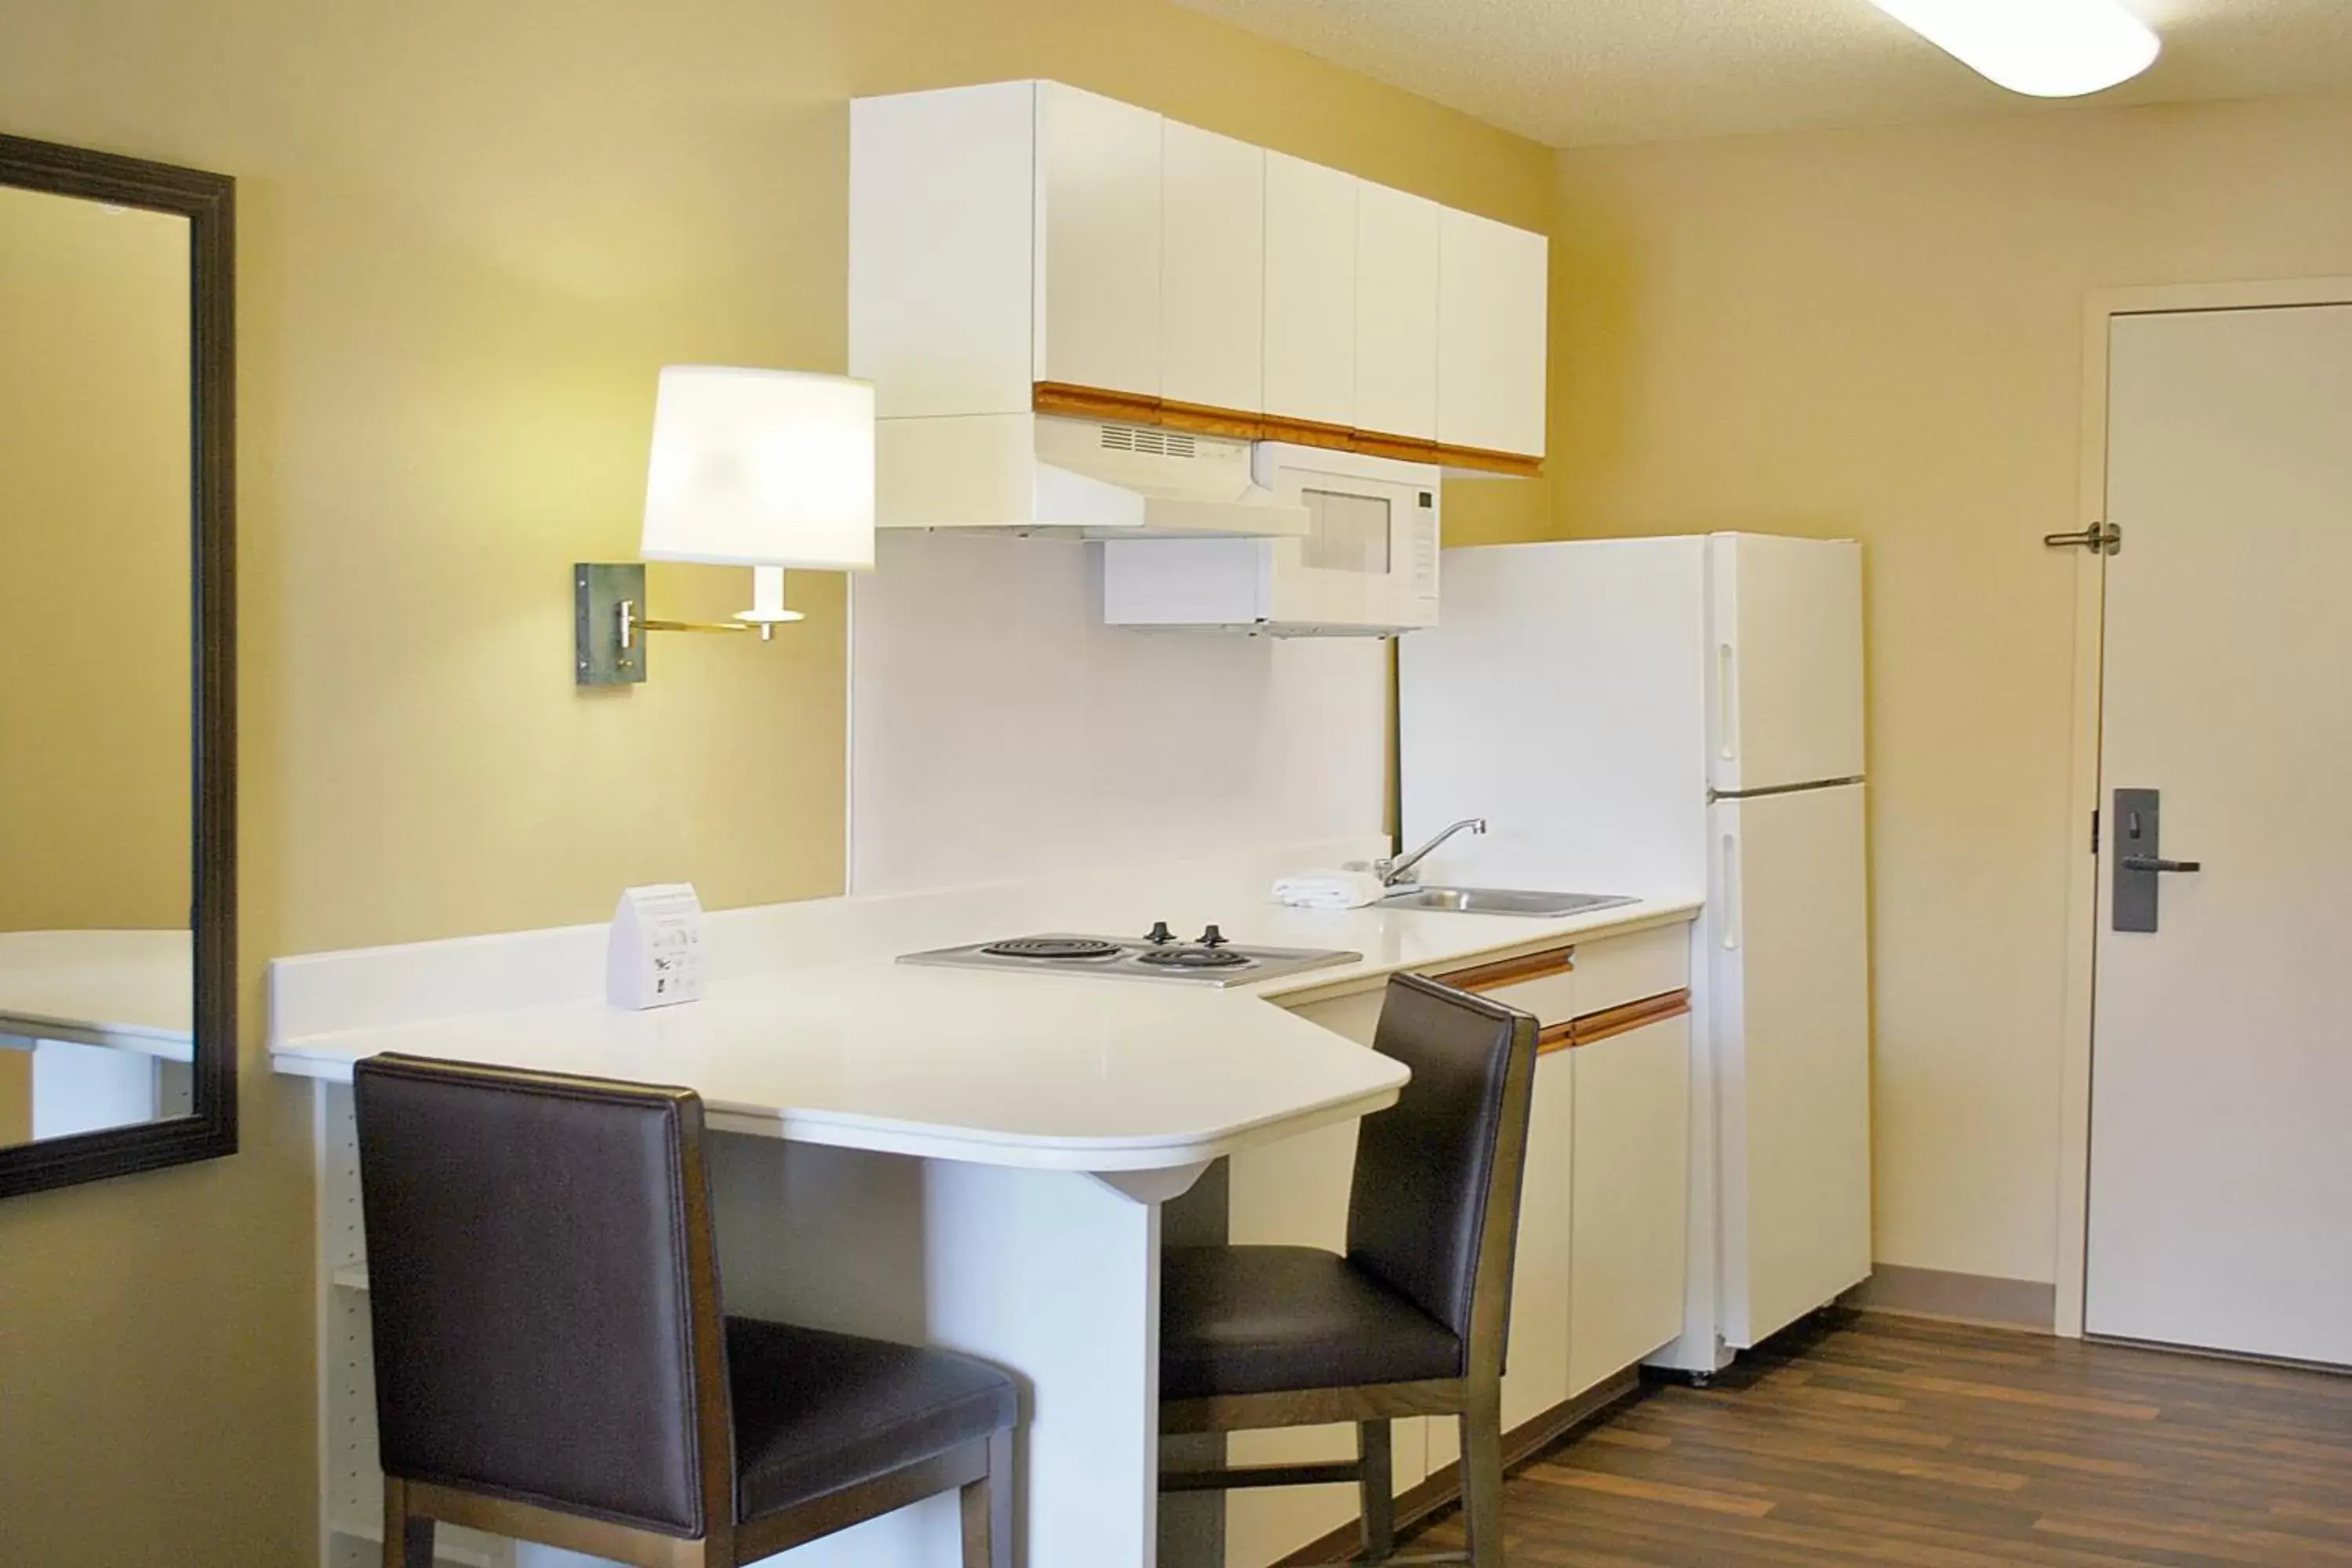 Kitchen or kitchenette, Bathroom in Extended Stay America Suites - Philadelphia - Horsham - Dresher Rd